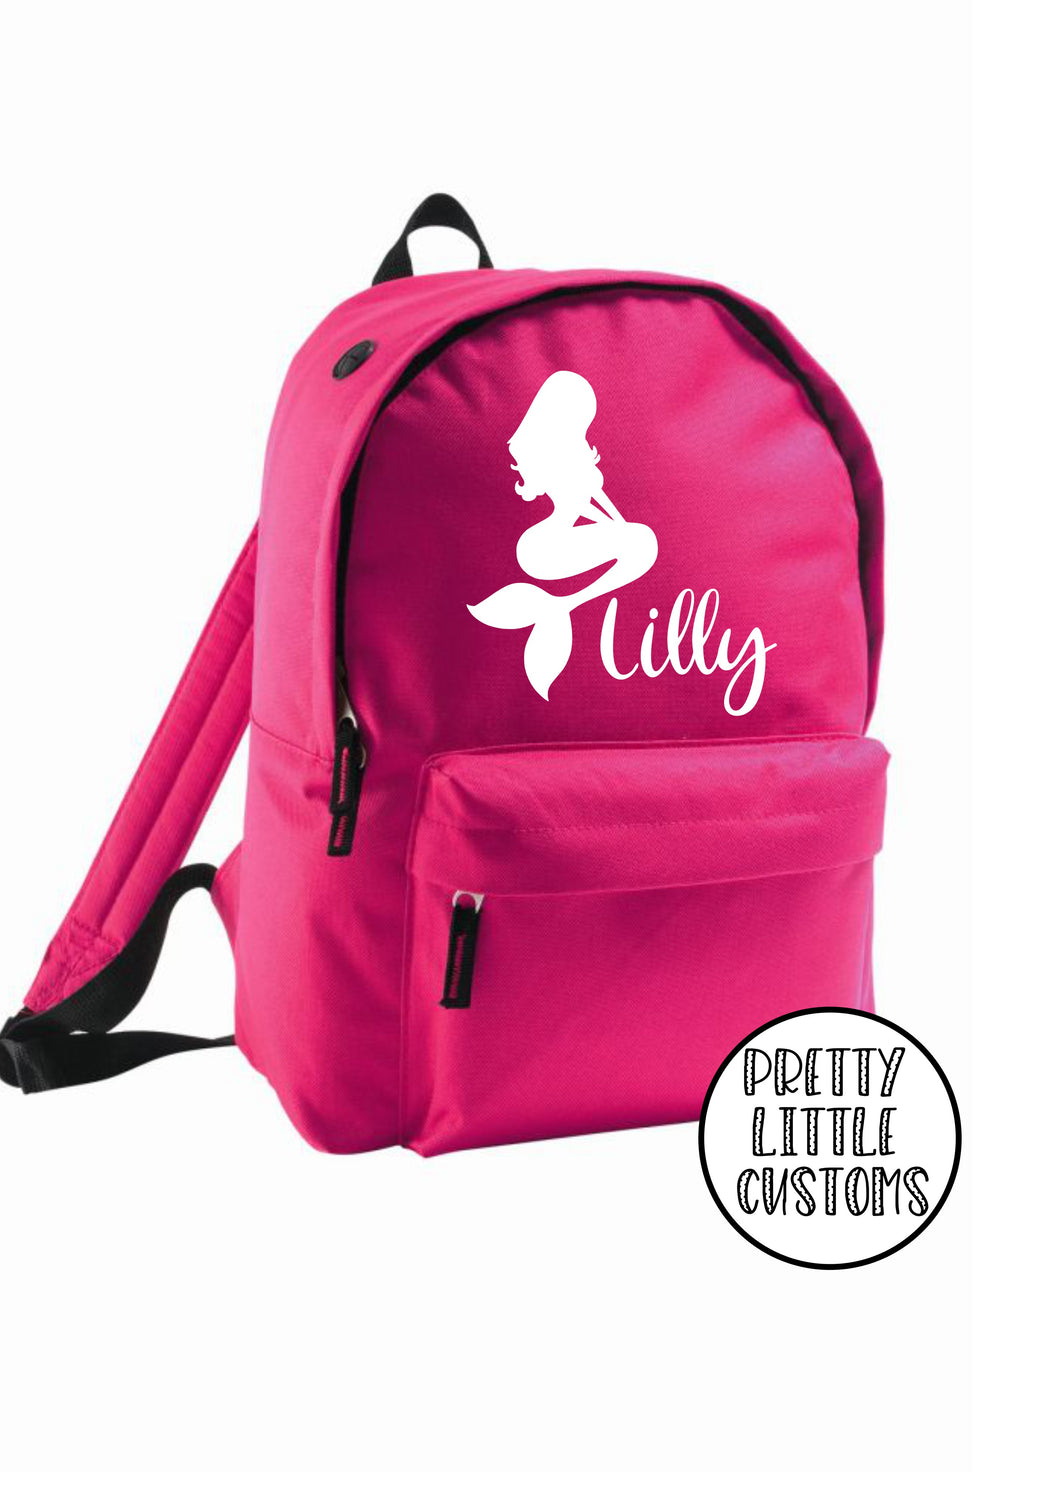 Personalised kids name, mermaid print rucksack/backpack/school bag - pink